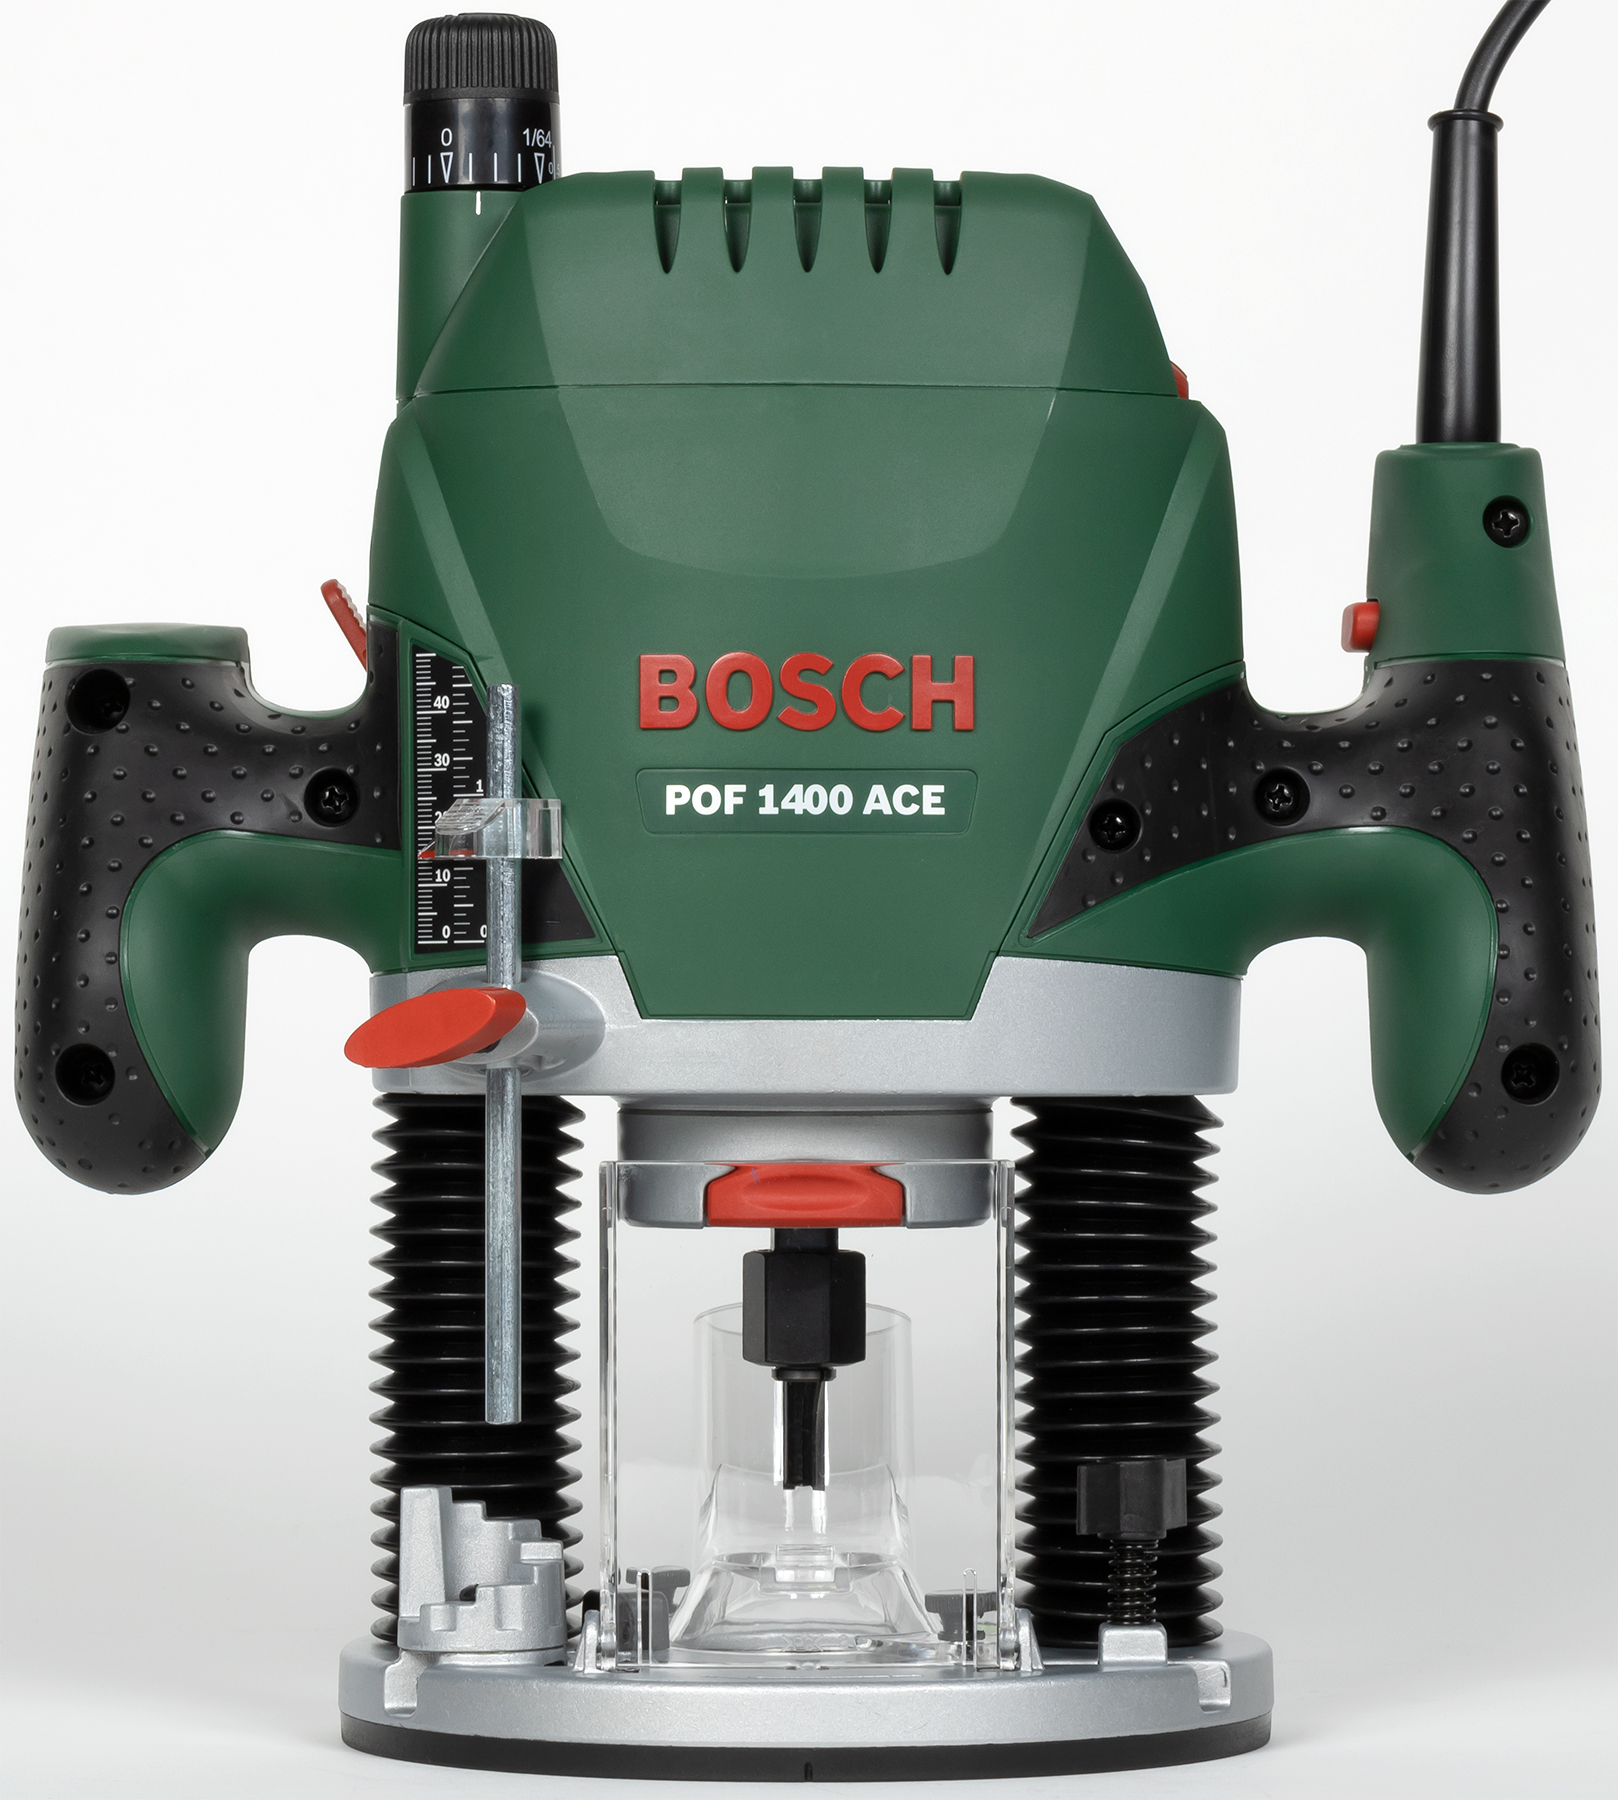 Bosch 1400 купить. Bosch POF 1400 Ace. POF 1400 Ace. Фрезер Bosch POF 1400. Bosch POF 1400 Ace комплектация.